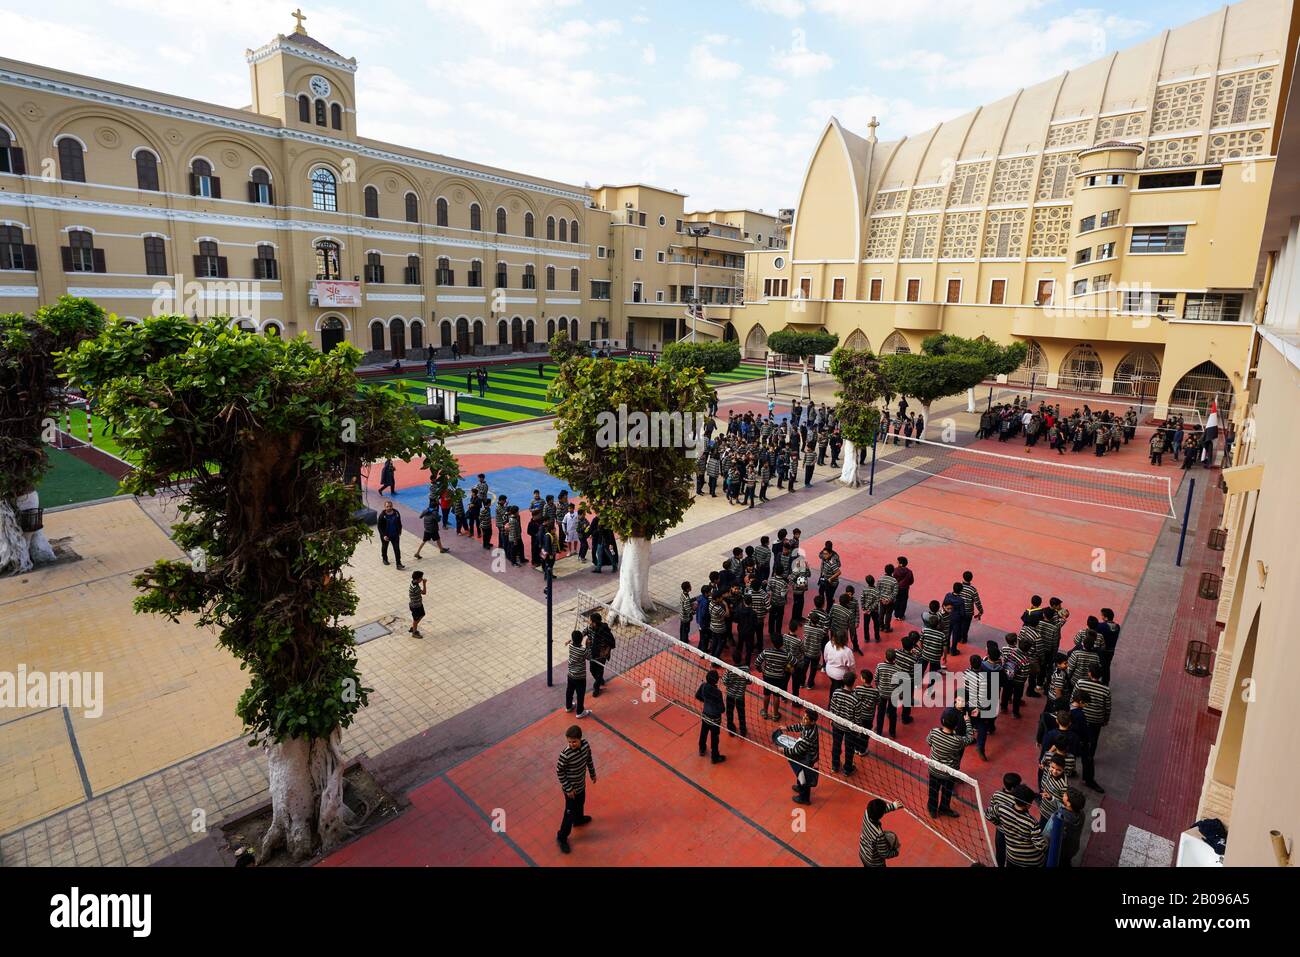 Écoliers dans la cour scolaire de l'école catholique Collège de la salle dans le district de Daher au Caire, en Egypte Banque D'Images